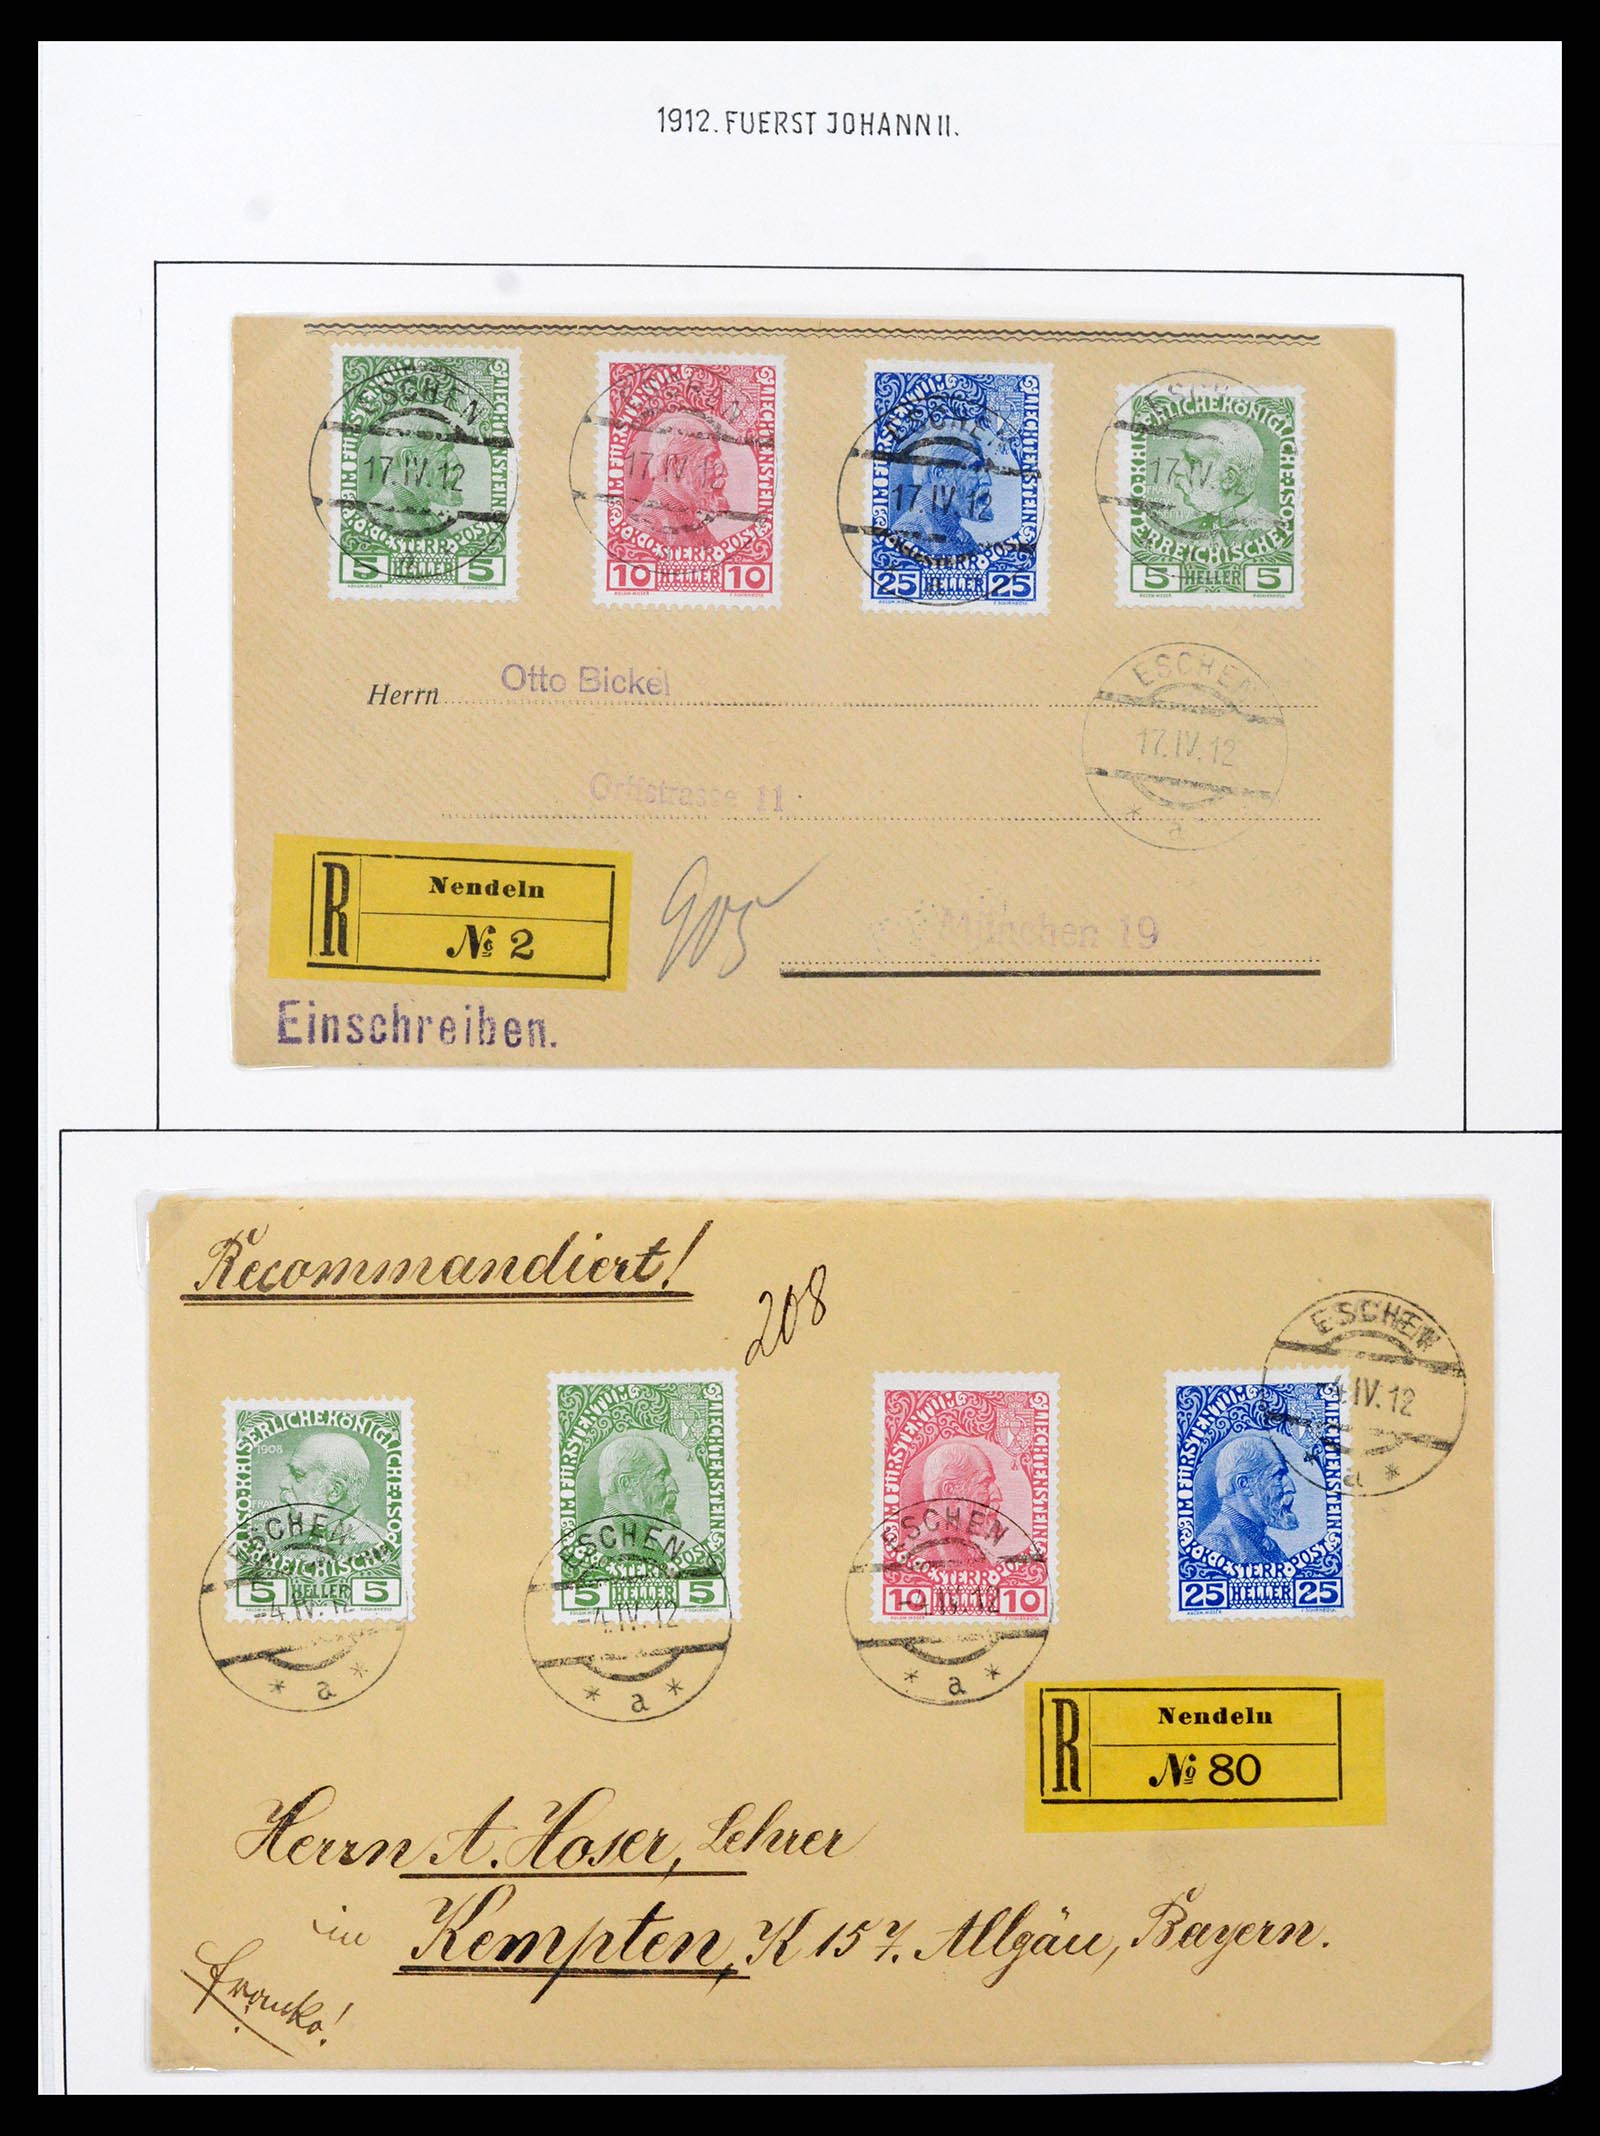 37150 0010 - Stamp collection 37150 Liechtenstein supercollection 1912-1962.